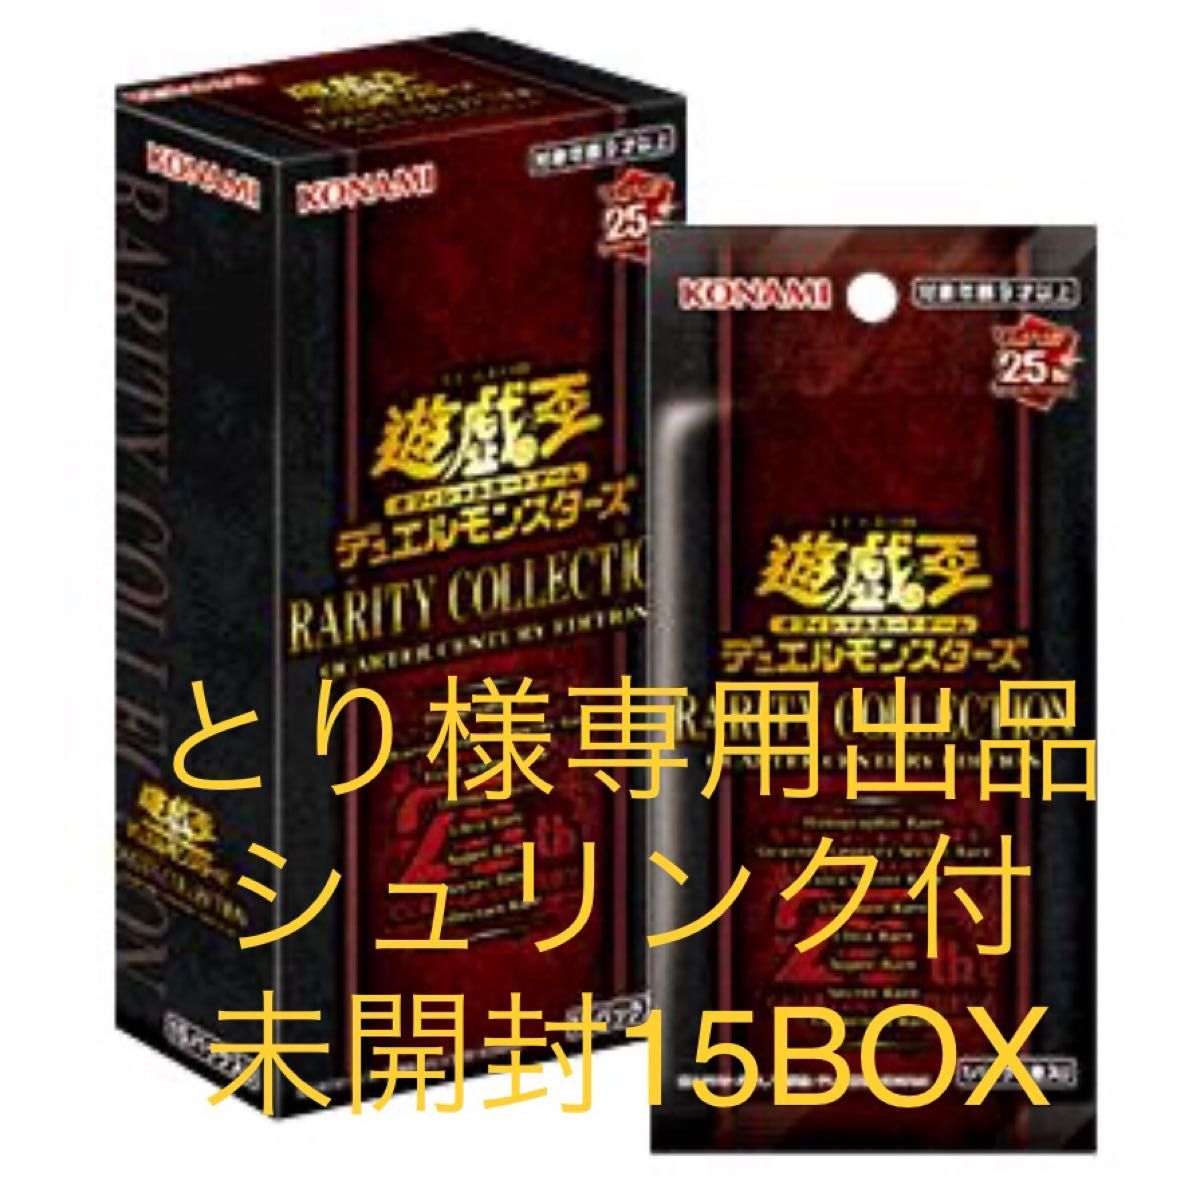 とり様専用出品 遊戯王 レアコレ 15ボックス RARITY COLLECTION 25th